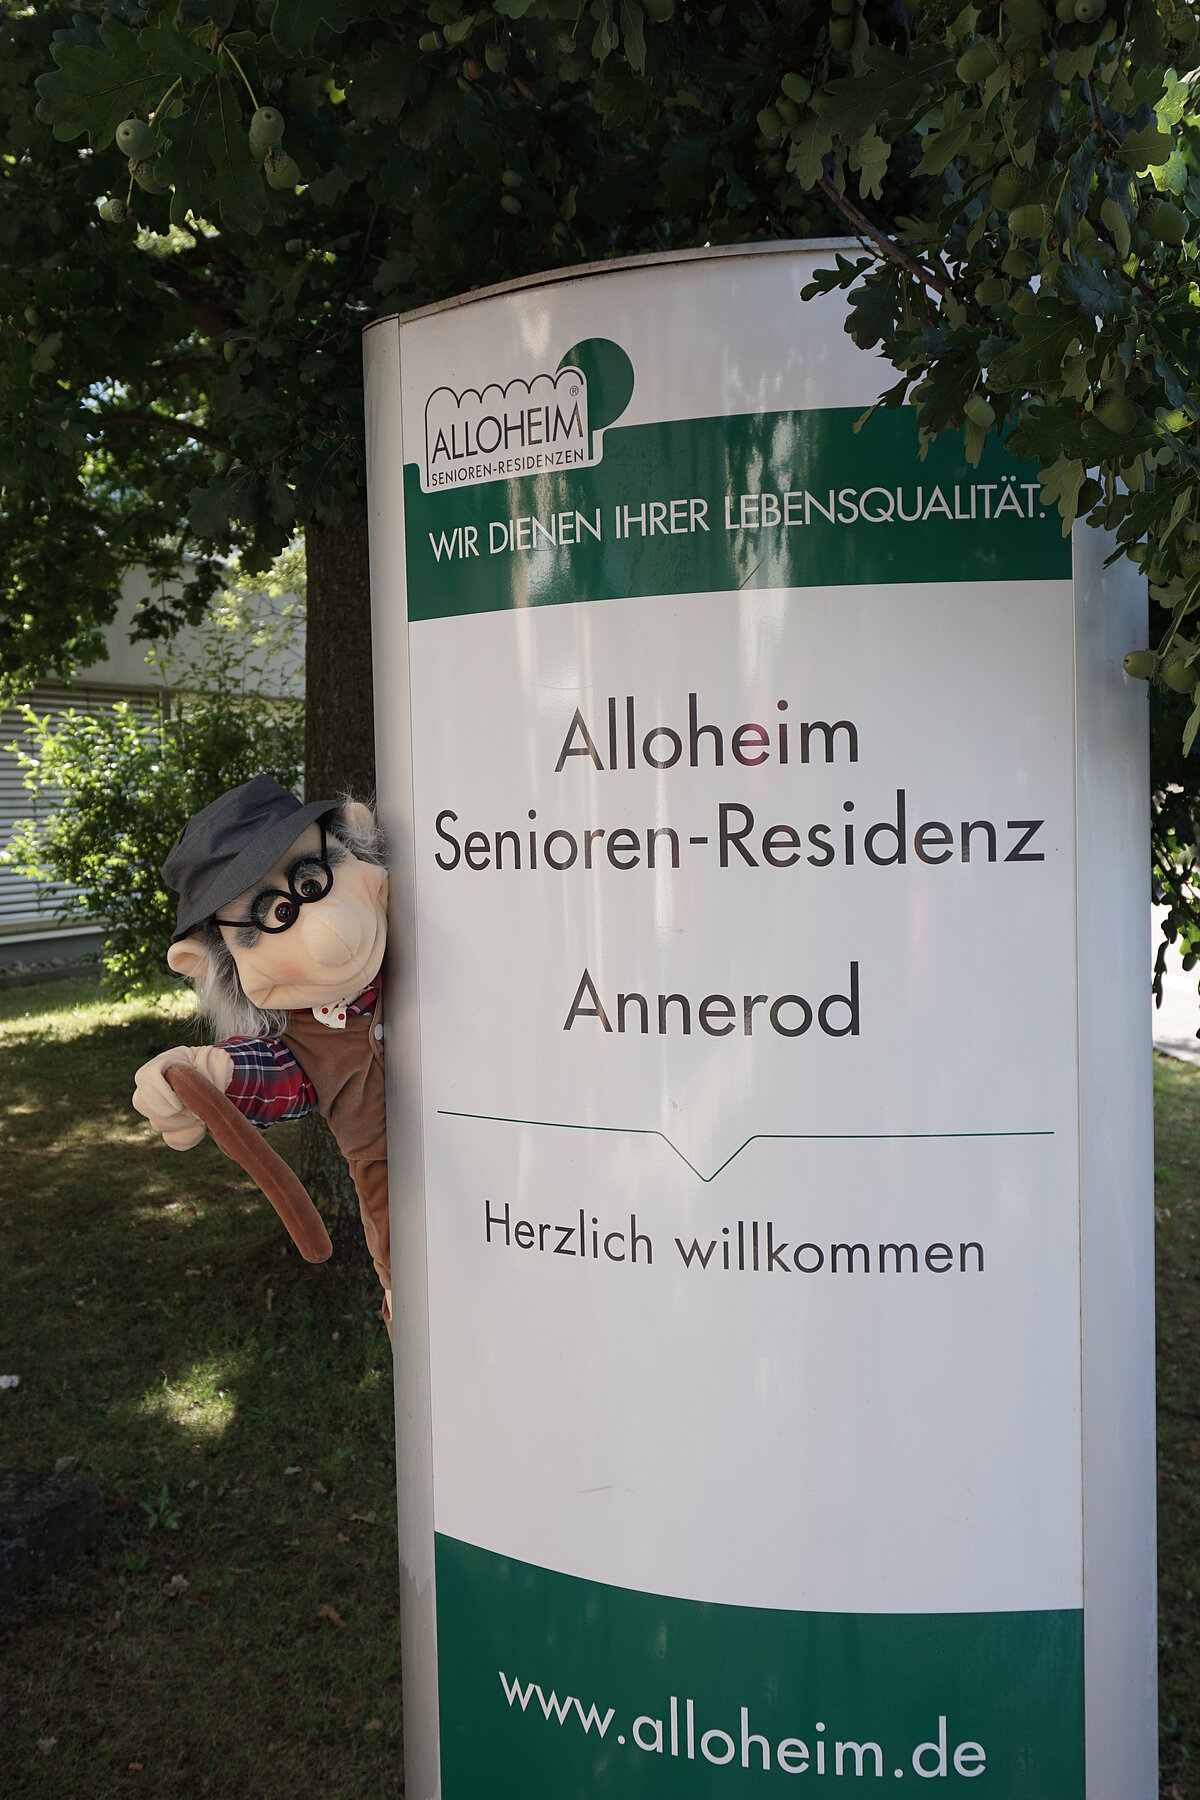 Maskottchen neben dem Schild zur Alloheim Senioren-Residenz Annerod